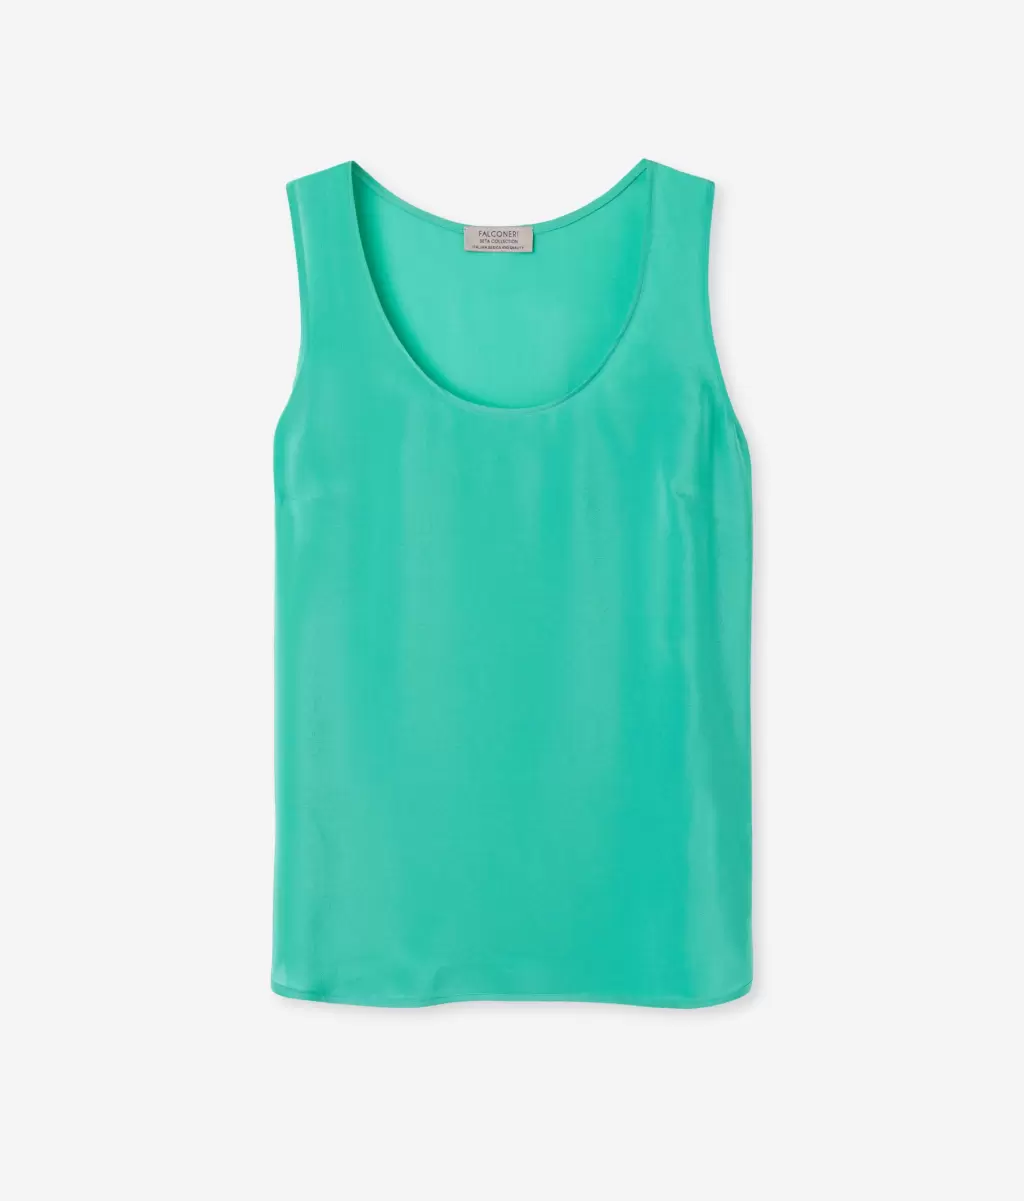 Kobieta Jedwabny Podkoszulek Z Dużym Dekoltem Falconeri Green Topy I T-Shirty - 4